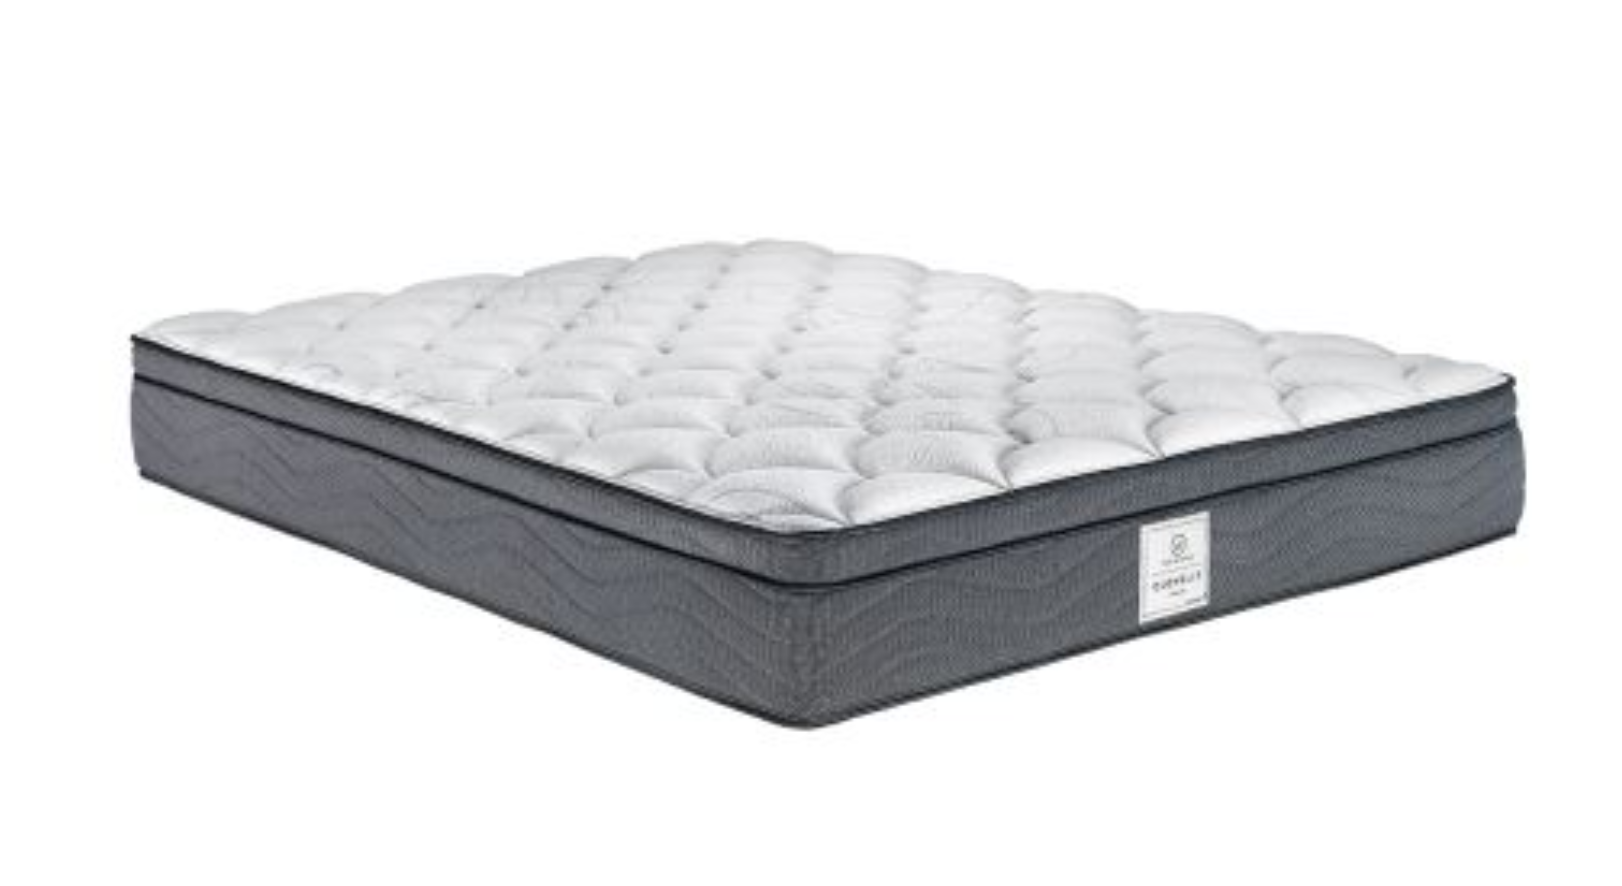 whitehaven clovelly medium queen mattress review